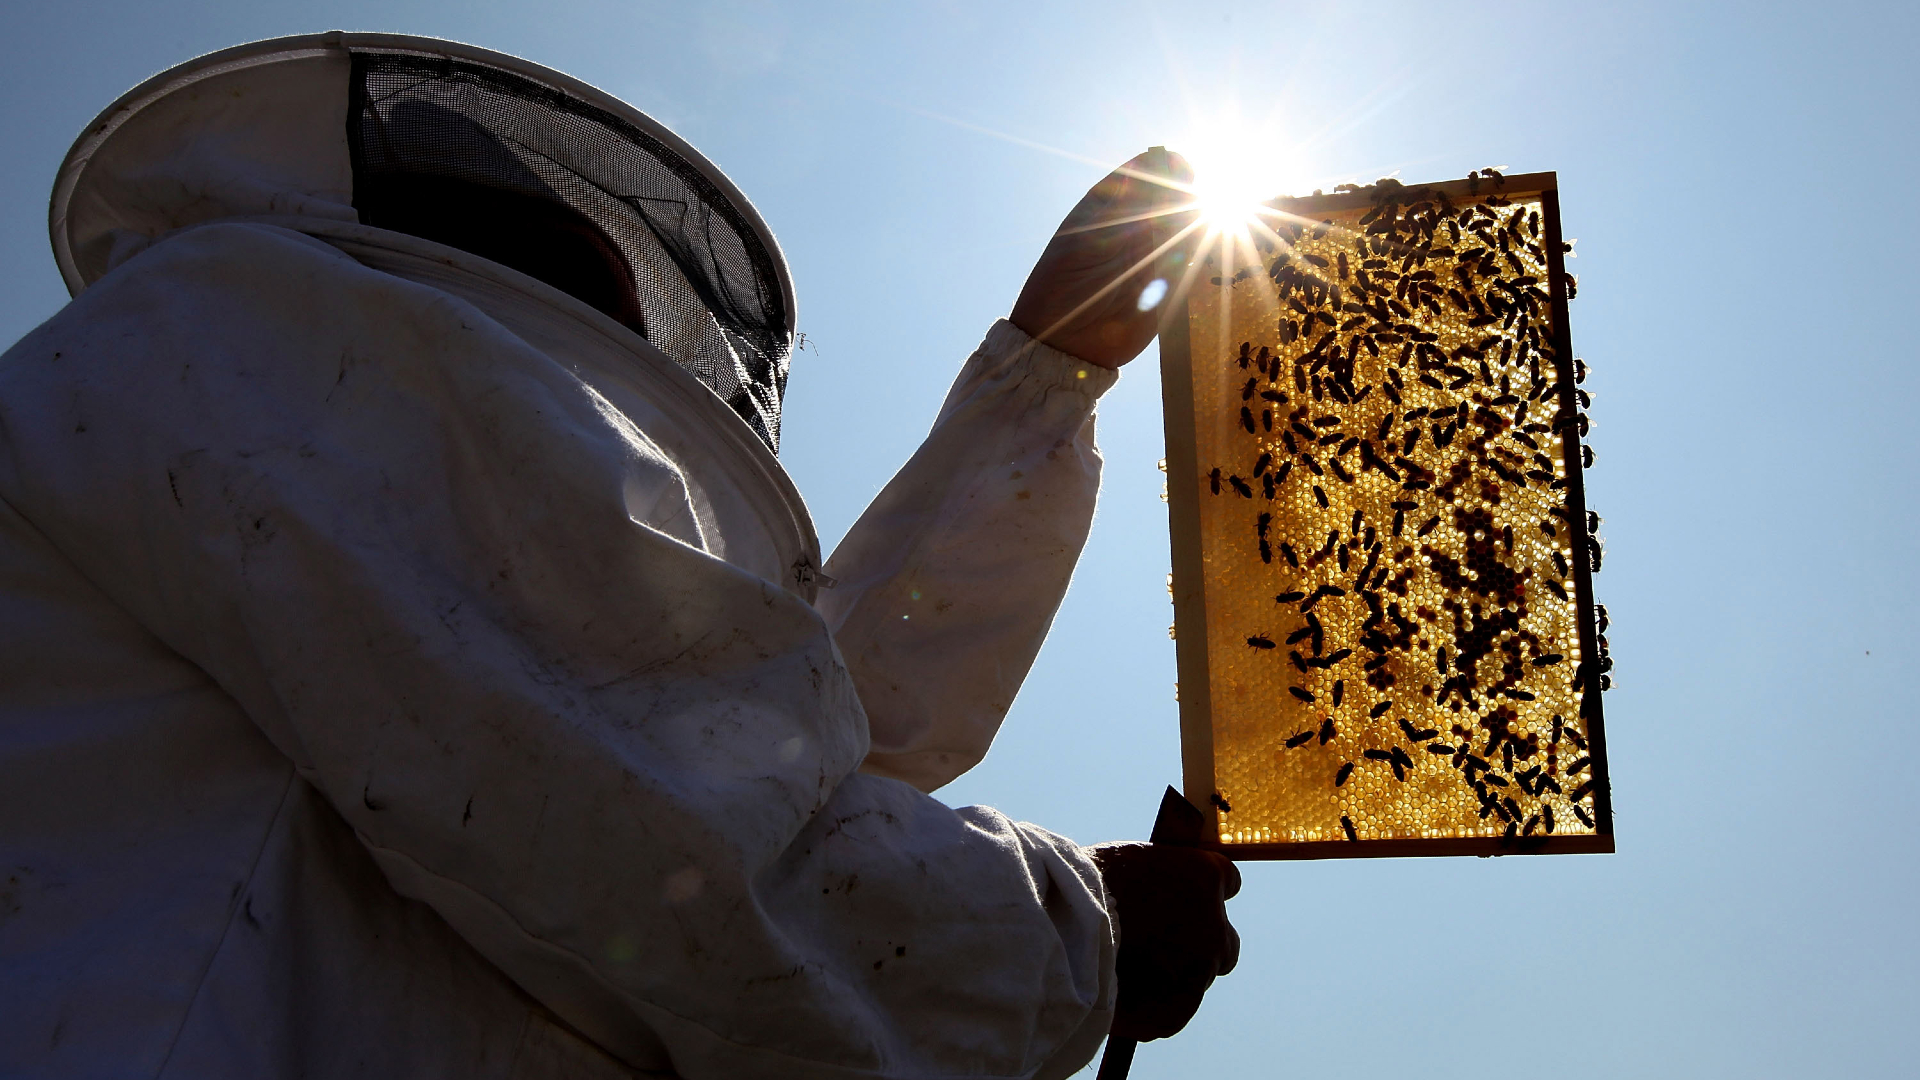 Egy fura hagyomány miatt a királyi méhésznek közölnie kell a méhekkel, hogy meghalt a királynő